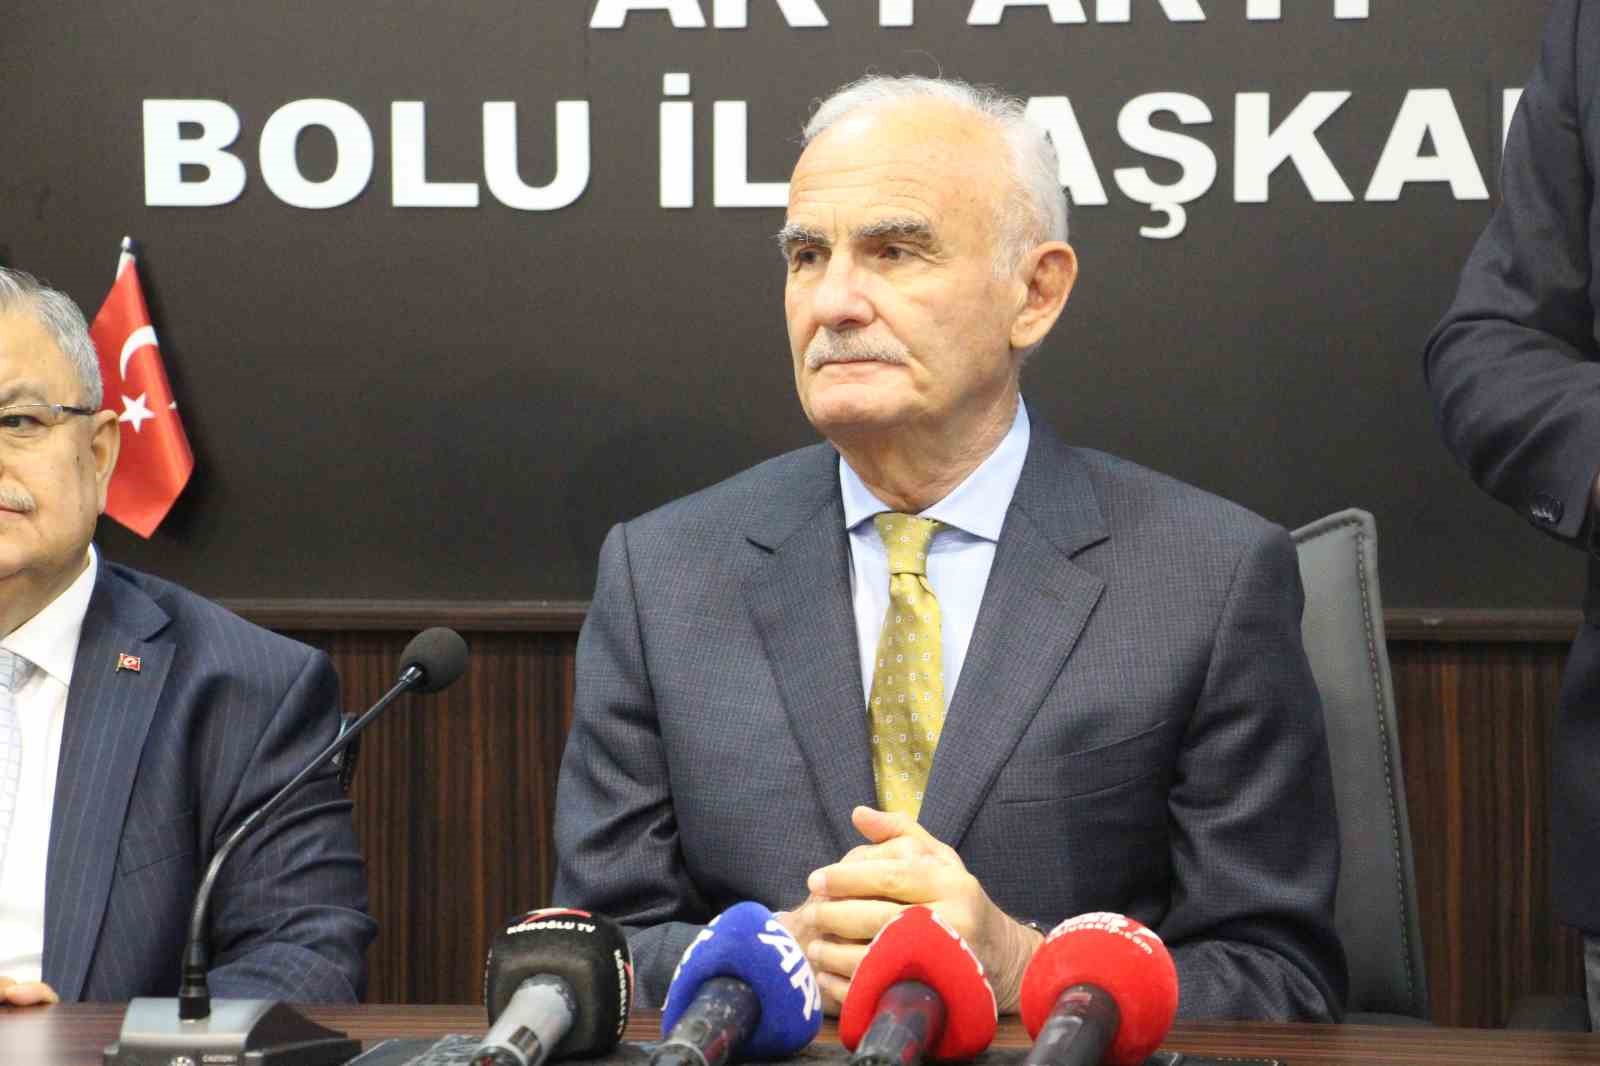 AK Parti Genel Başkan Yardımcısı Yılmaz: “Beklediğimiz seçim sonucunu elde edemedik”